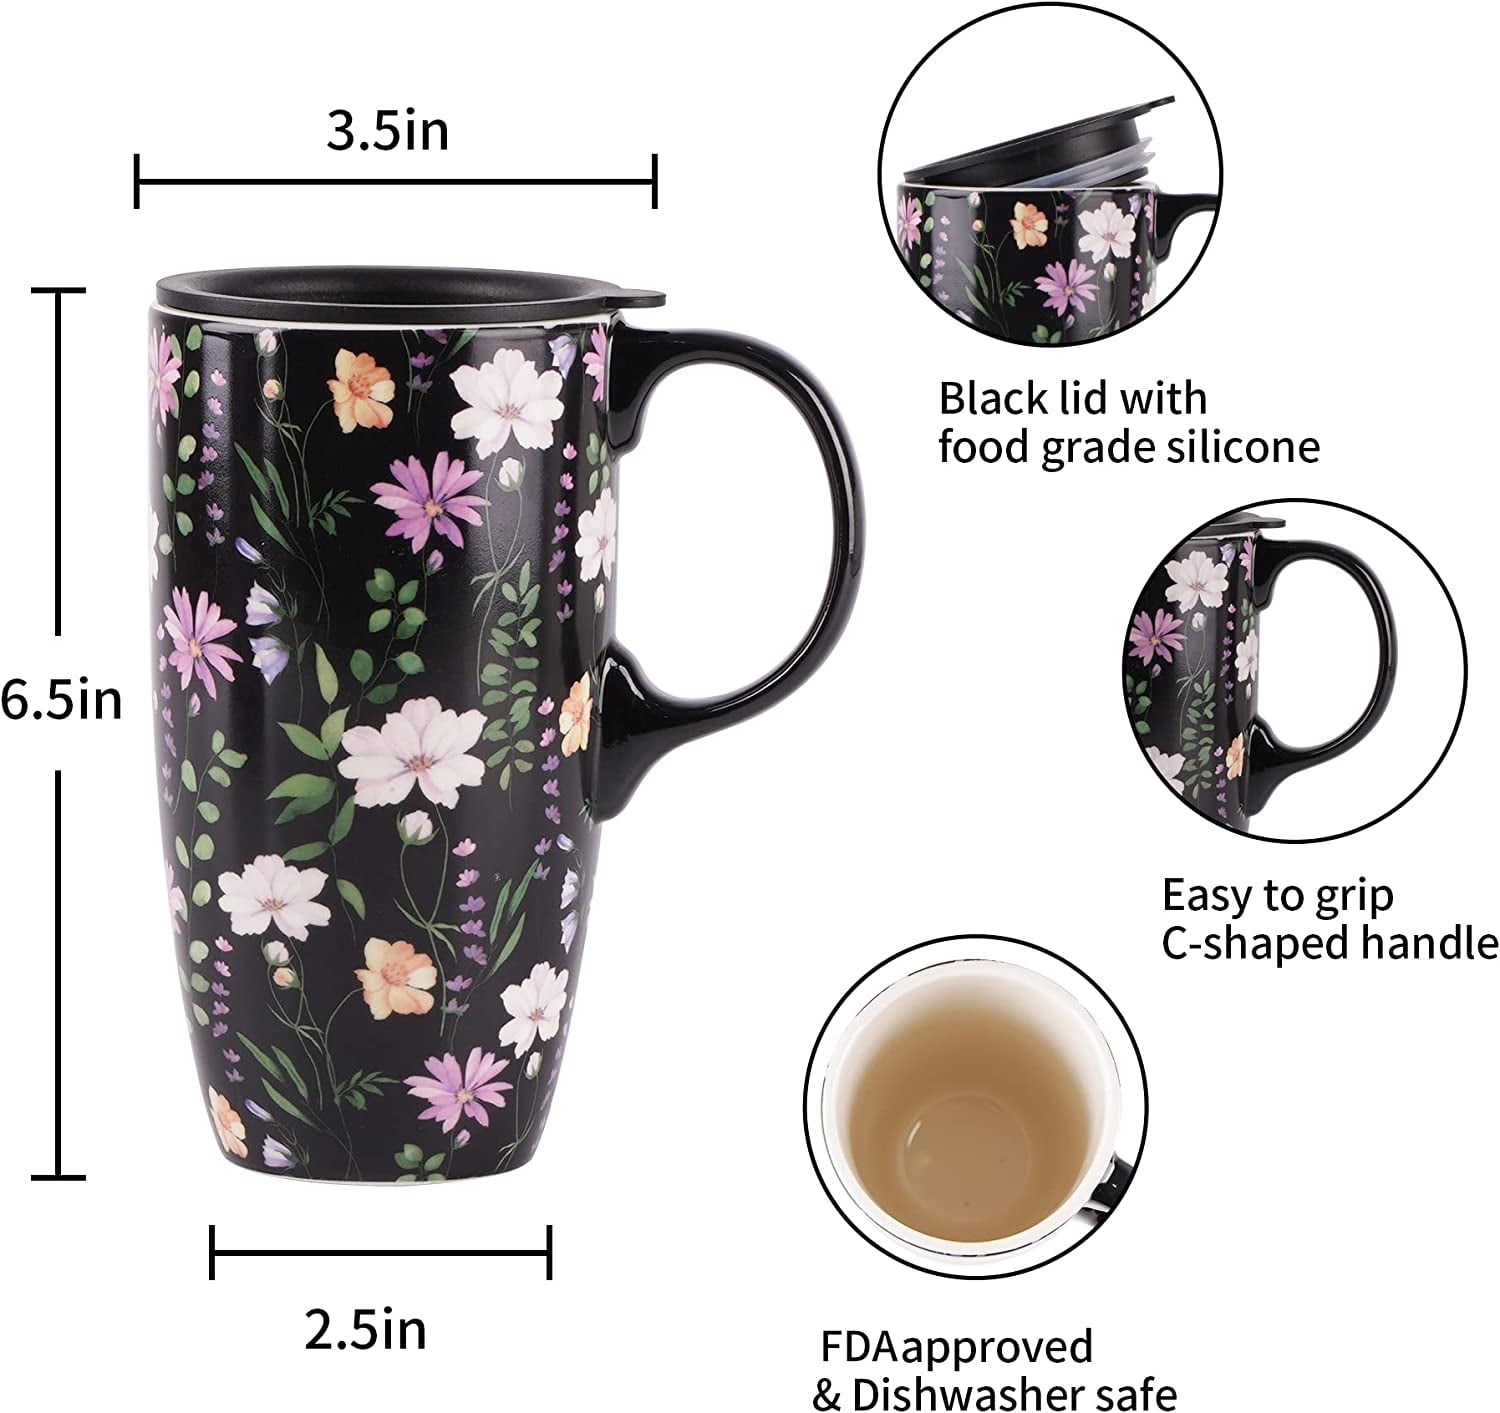 Cafe Pilon Ceramic Coffee Mug / Tea Mug / Mug for Latinos / Spanish Coffee  Mug -  Norway